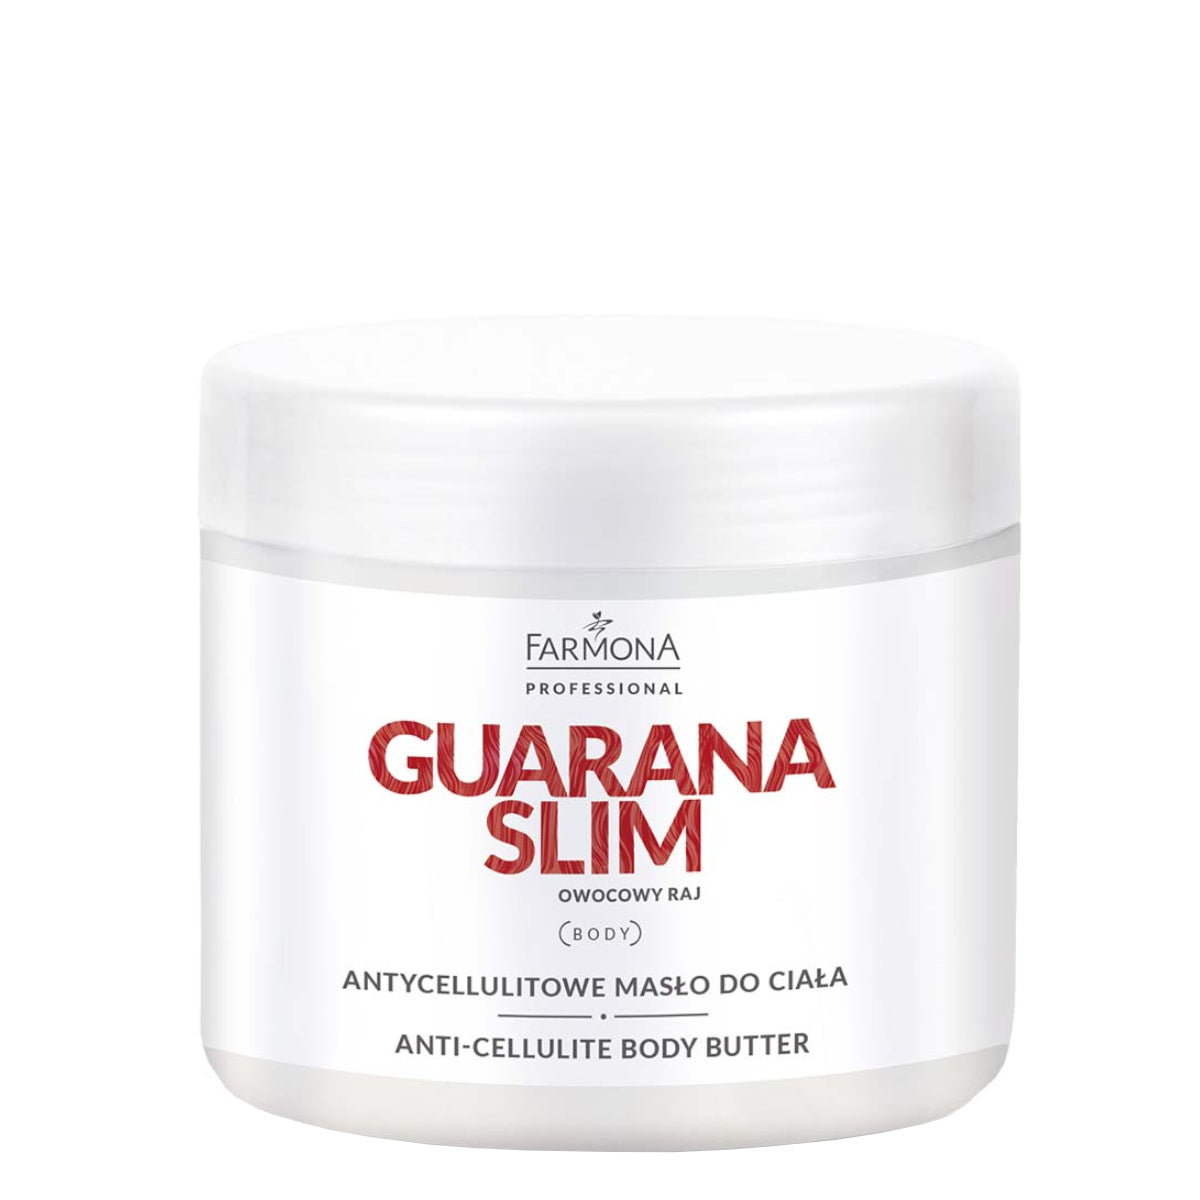 Farmona Professional Guarana Slim Anti-Cellulite Body Butter - Roxie Cosmetics